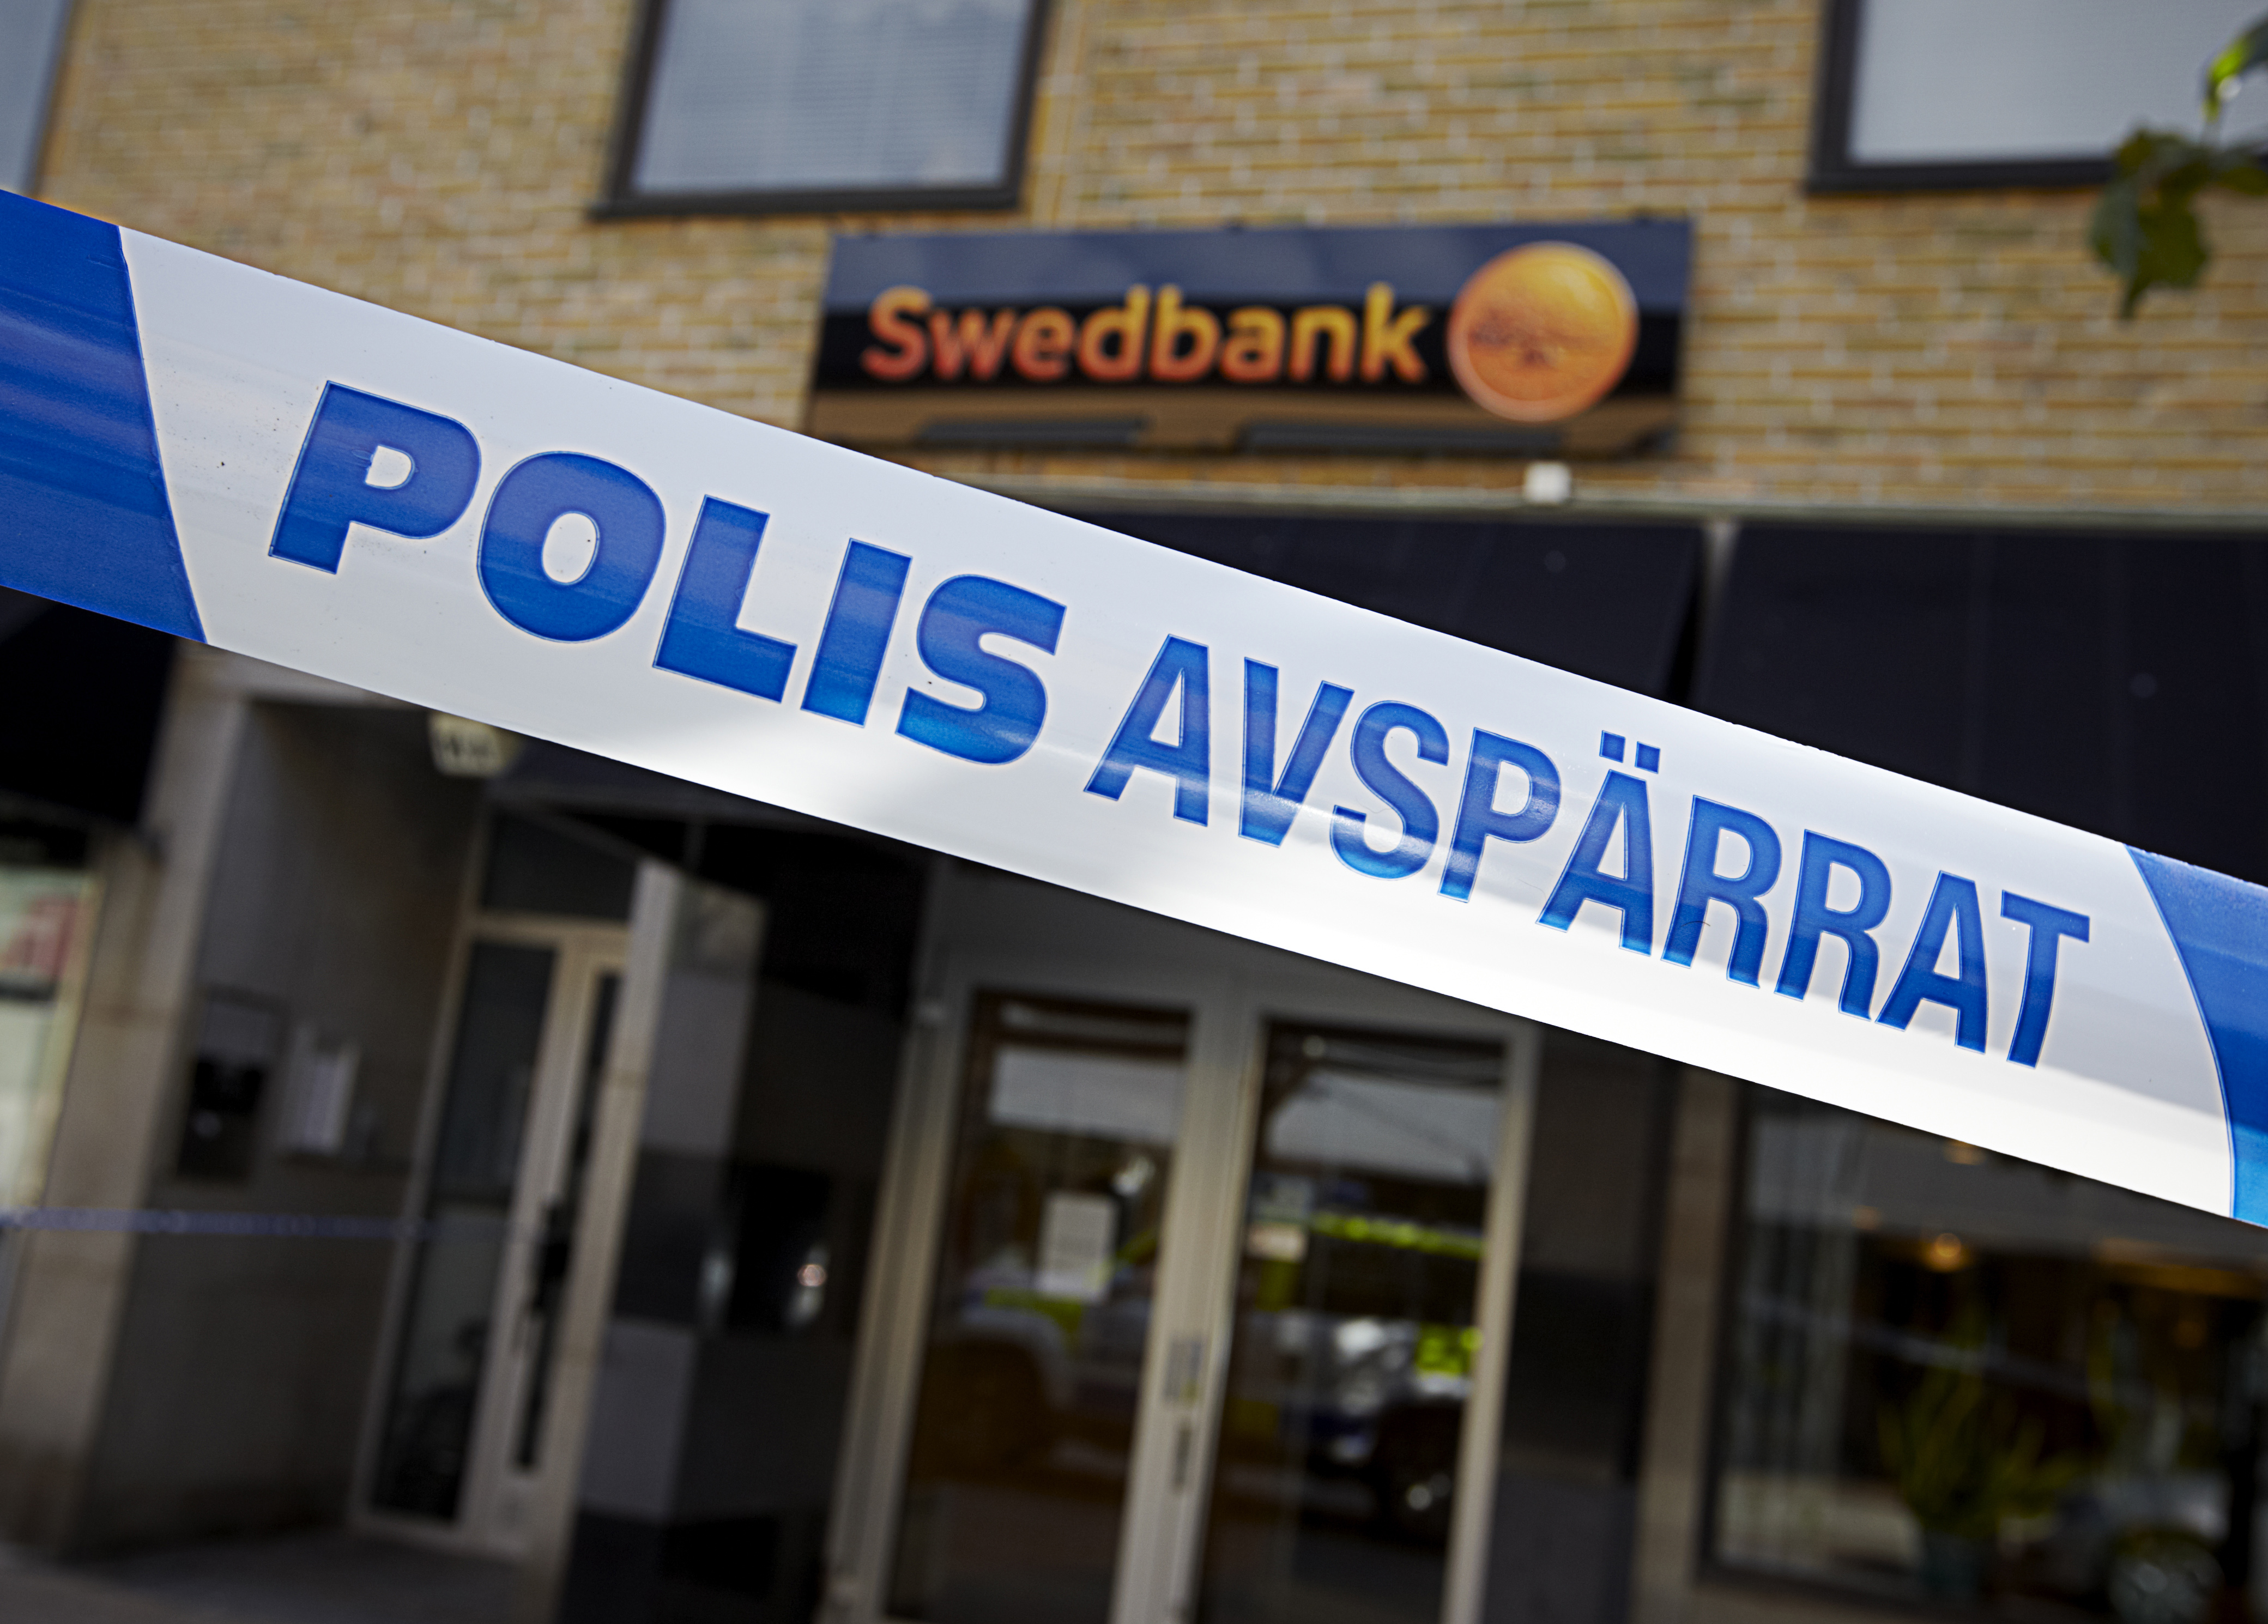 Avspärrning efter bankrån i Alvesta i Kronobergs län. Kommunen kommer dock "bara" trea sett till antal anmälda brott per 100 000 invånare.